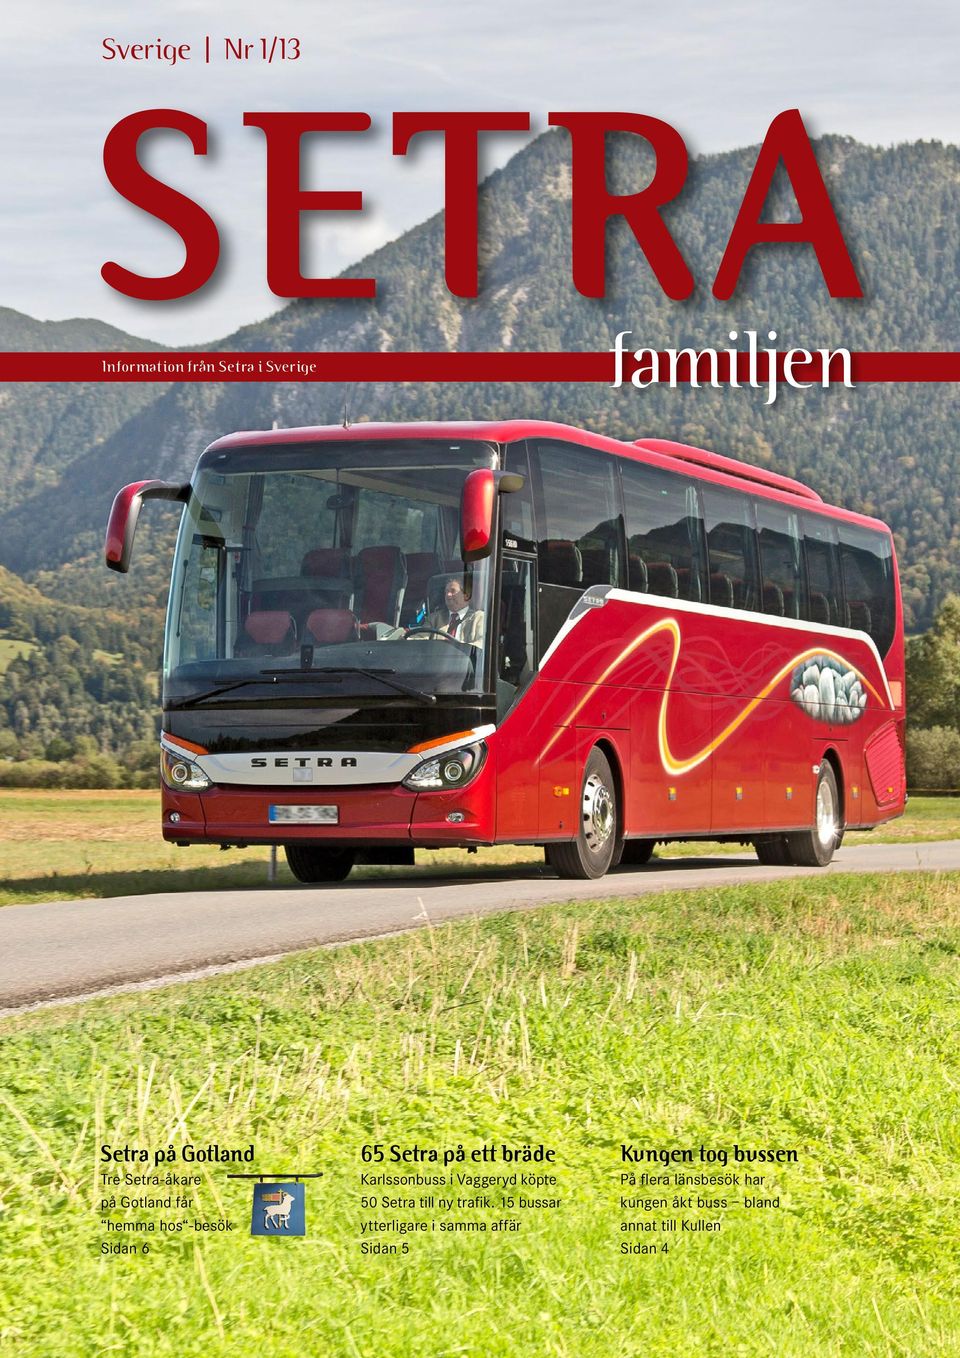 Karlssonbuss i Vaggeryd köpte 50 Setra till ny trafik.